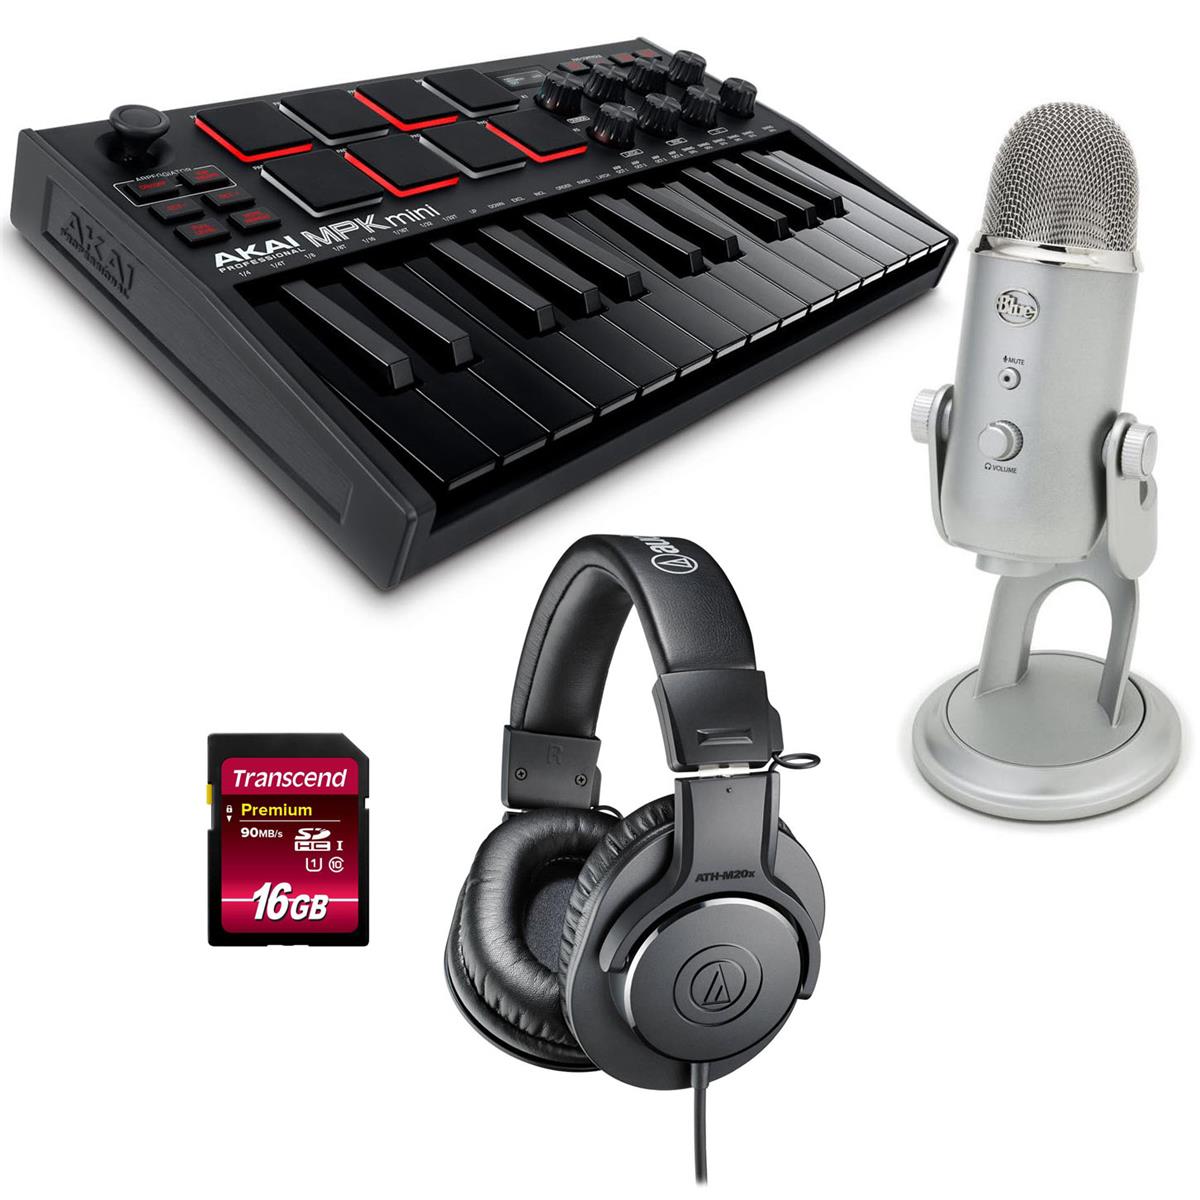 Akai MPK Mini MK3 25-Key MIDI Controller, Black with USB Mic, Headphones -  MPKMINI3B A